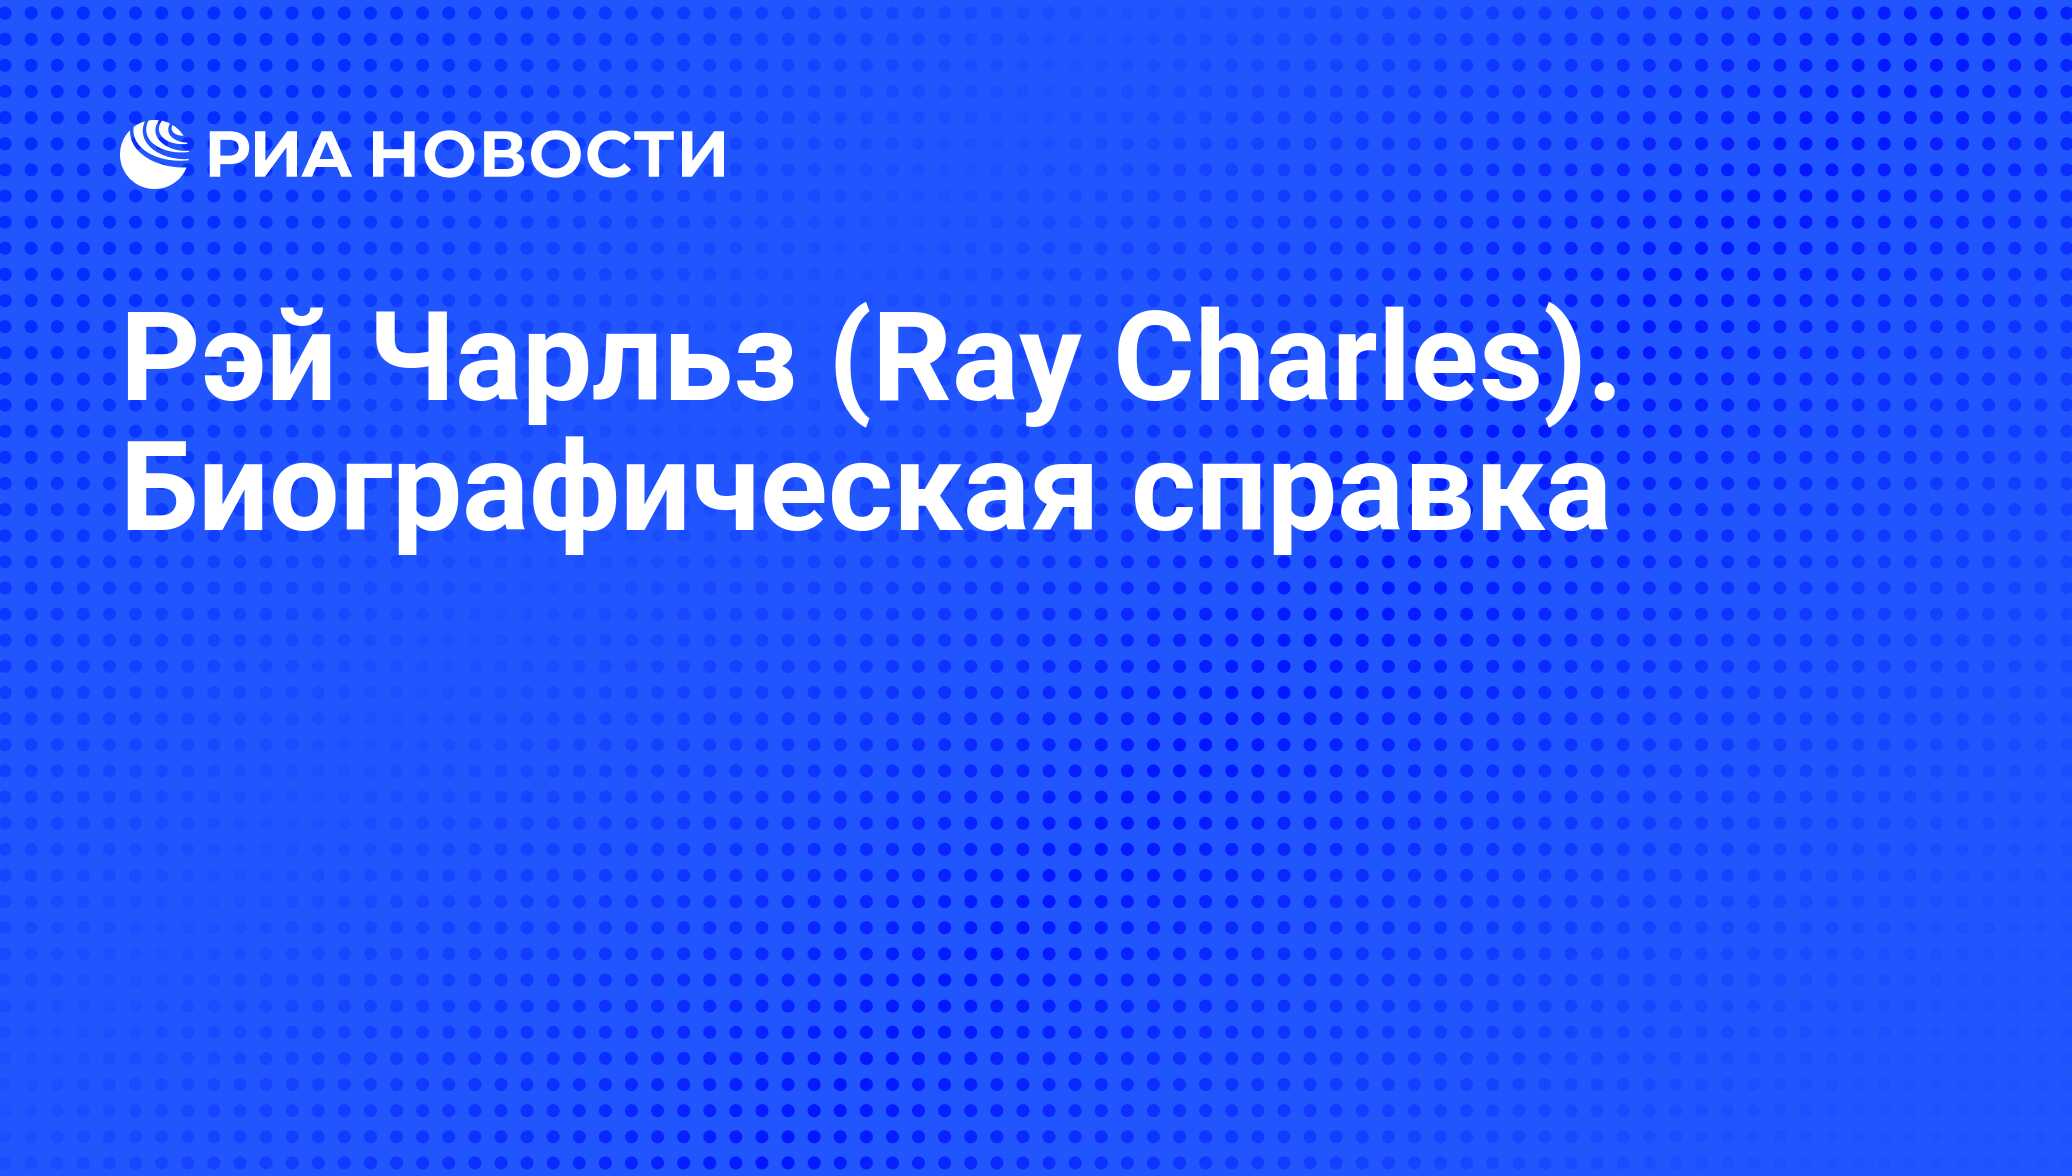 Рэй Чарльз (Ray Charles). Биографическая справка - РИА Новости, 03.05.2017